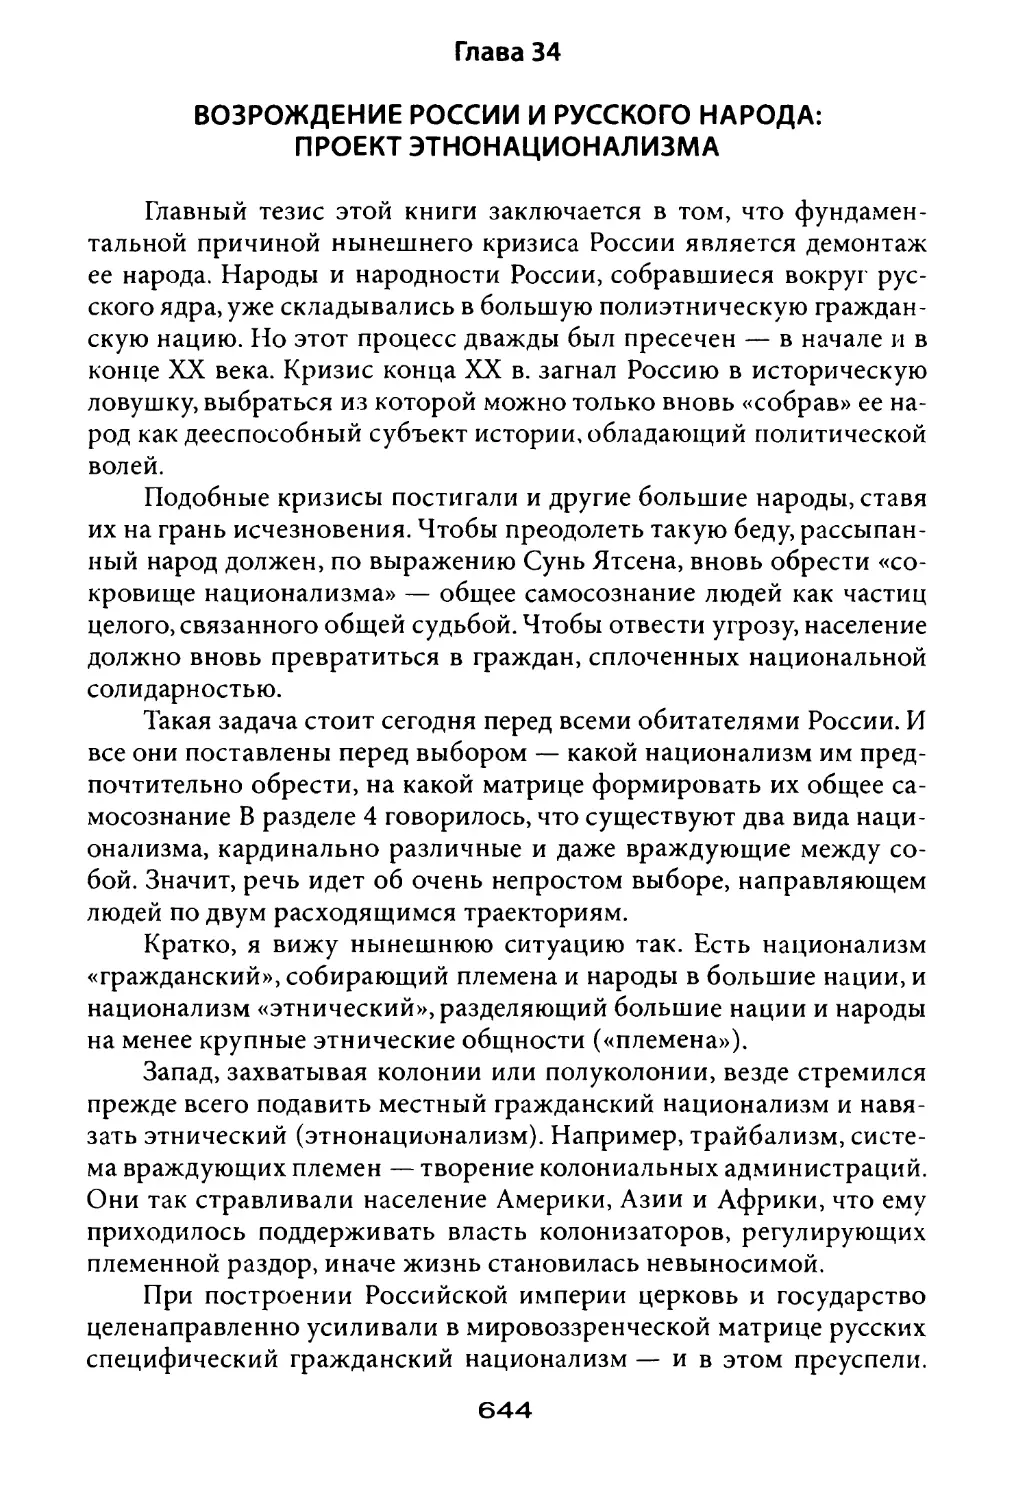 Глава 34. Возрождение России и русского народа: проект этнонационализма